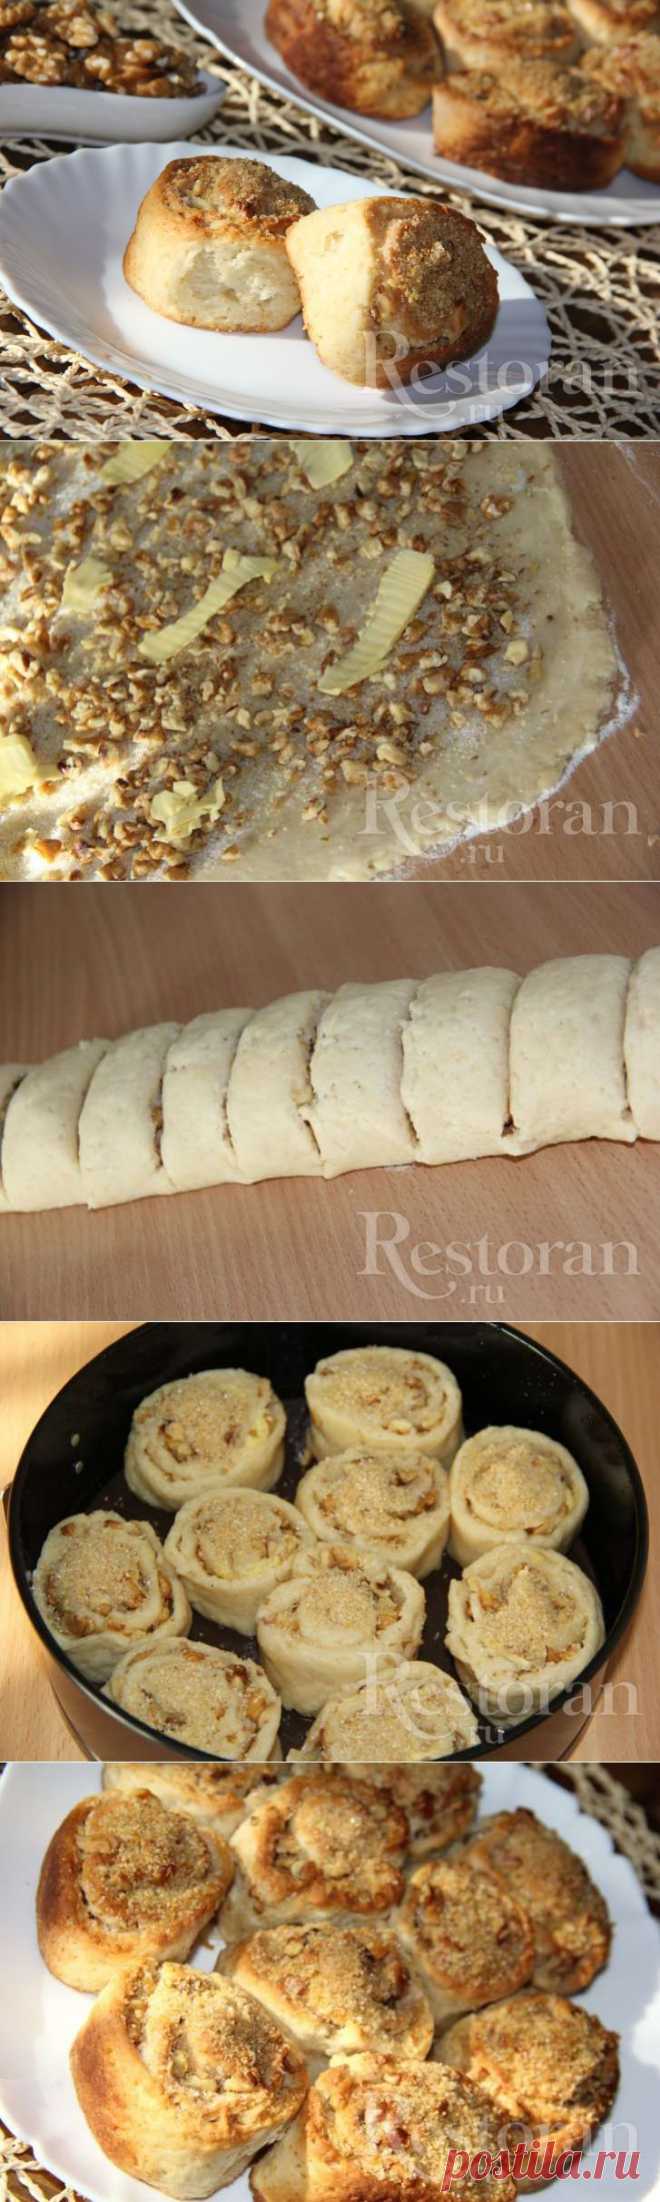 Рецепт: Творожные улитки с ореховой начинкой